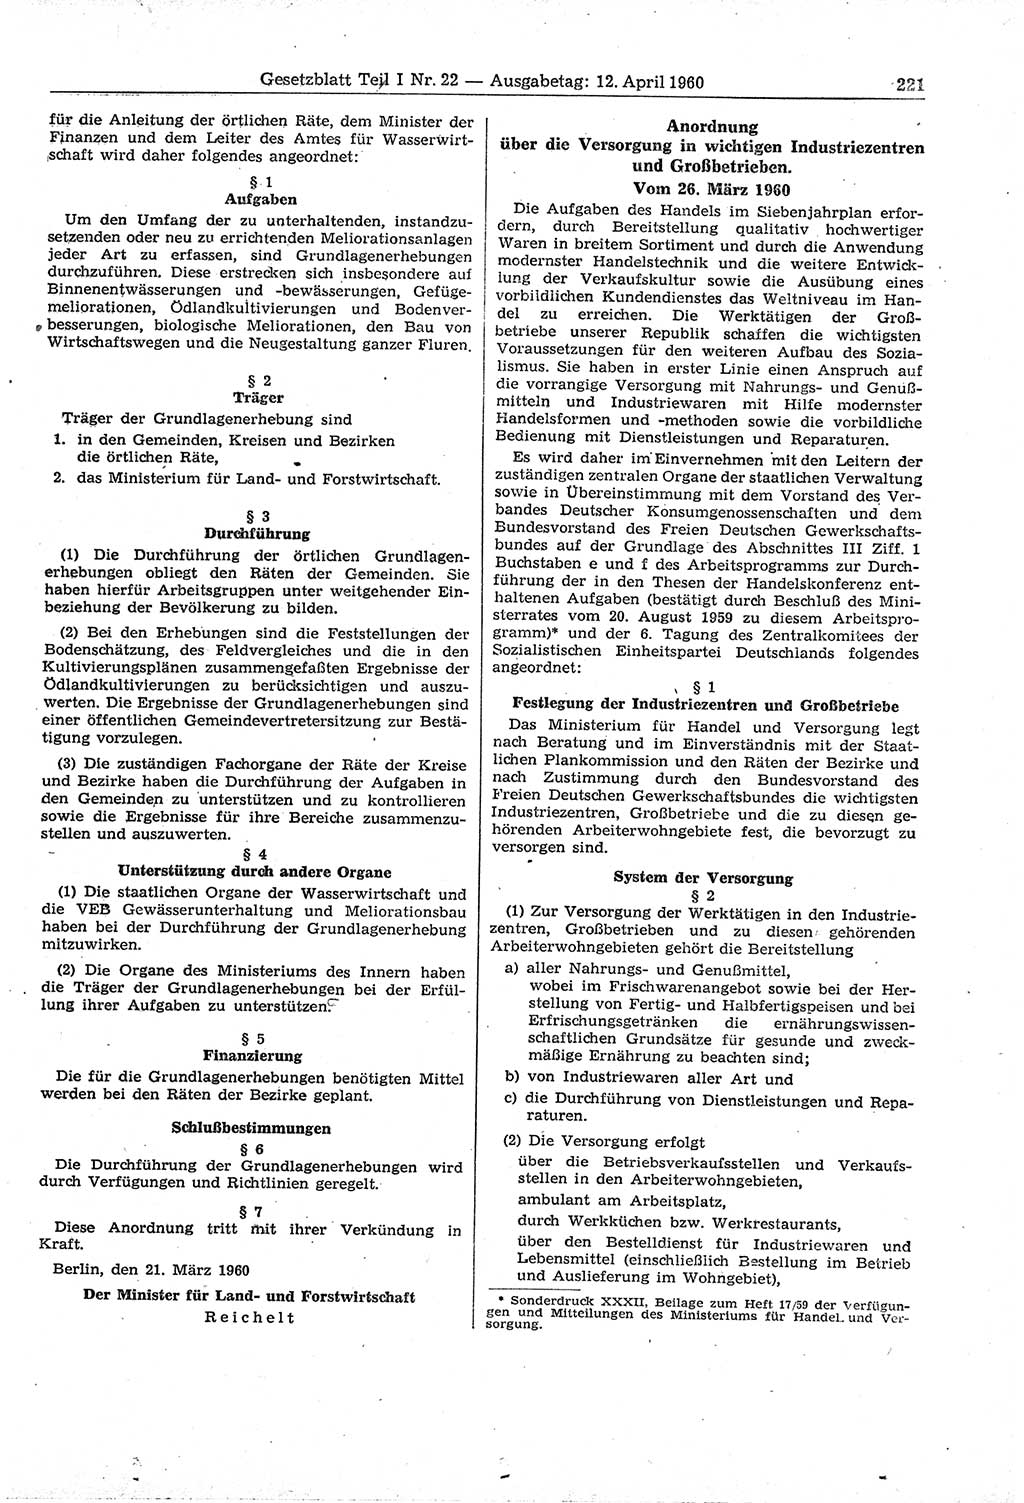 Gesetzblatt (GBl.) der Deutschen Demokratischen Republik (DDR) Teil Ⅰ 1960, Seite 221 (GBl. DDR Ⅰ 1960, S. 221)